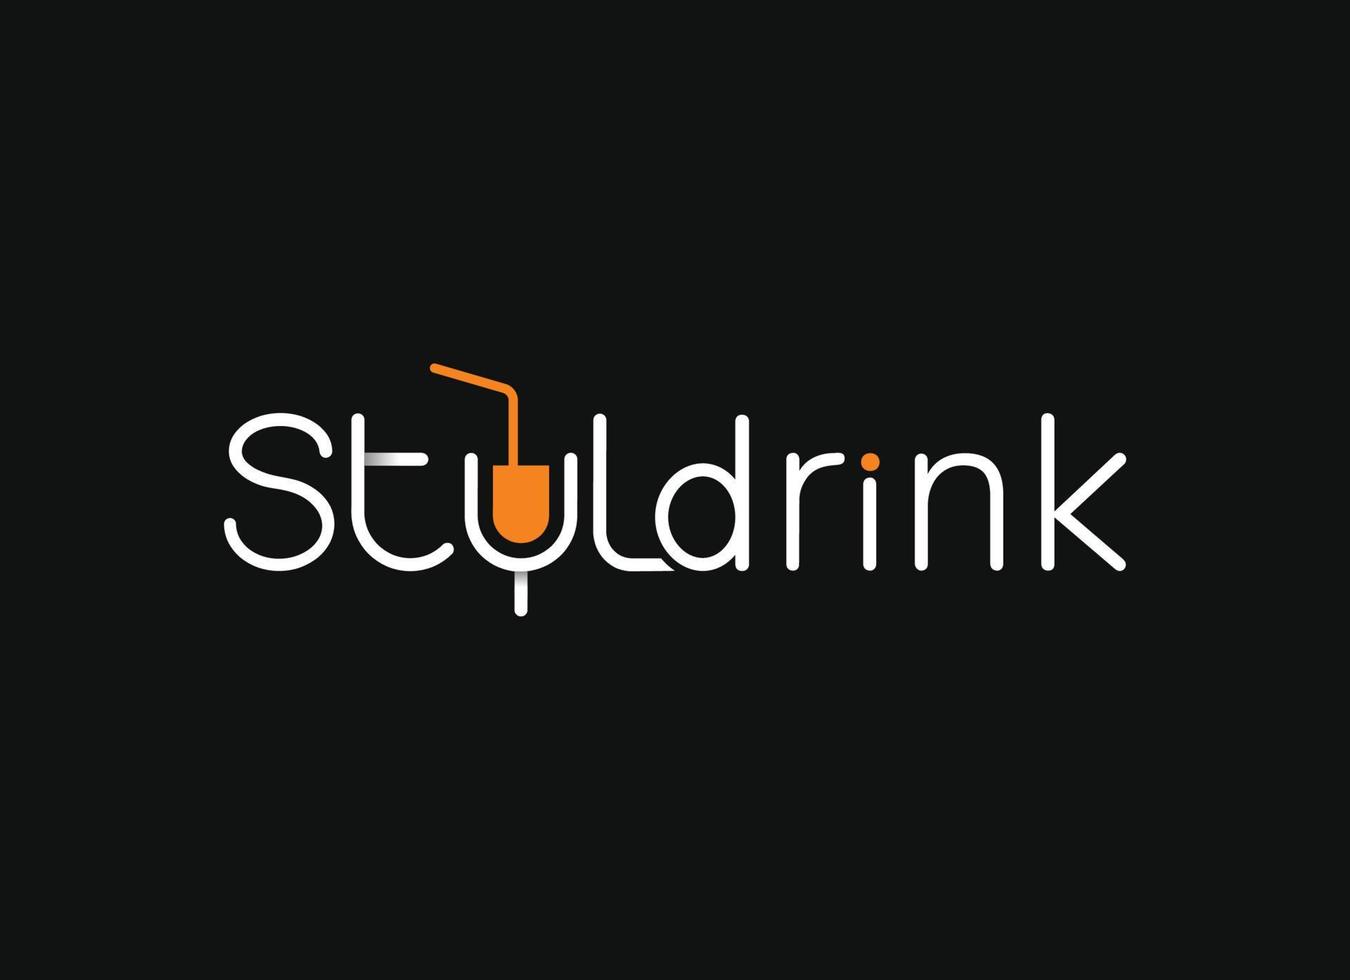 styledrink criativo ícone exclusivo e logotipo, ícone de download gratuito, empresa ou logotipo moderno simples de negócios. ícone de vetor de ações.